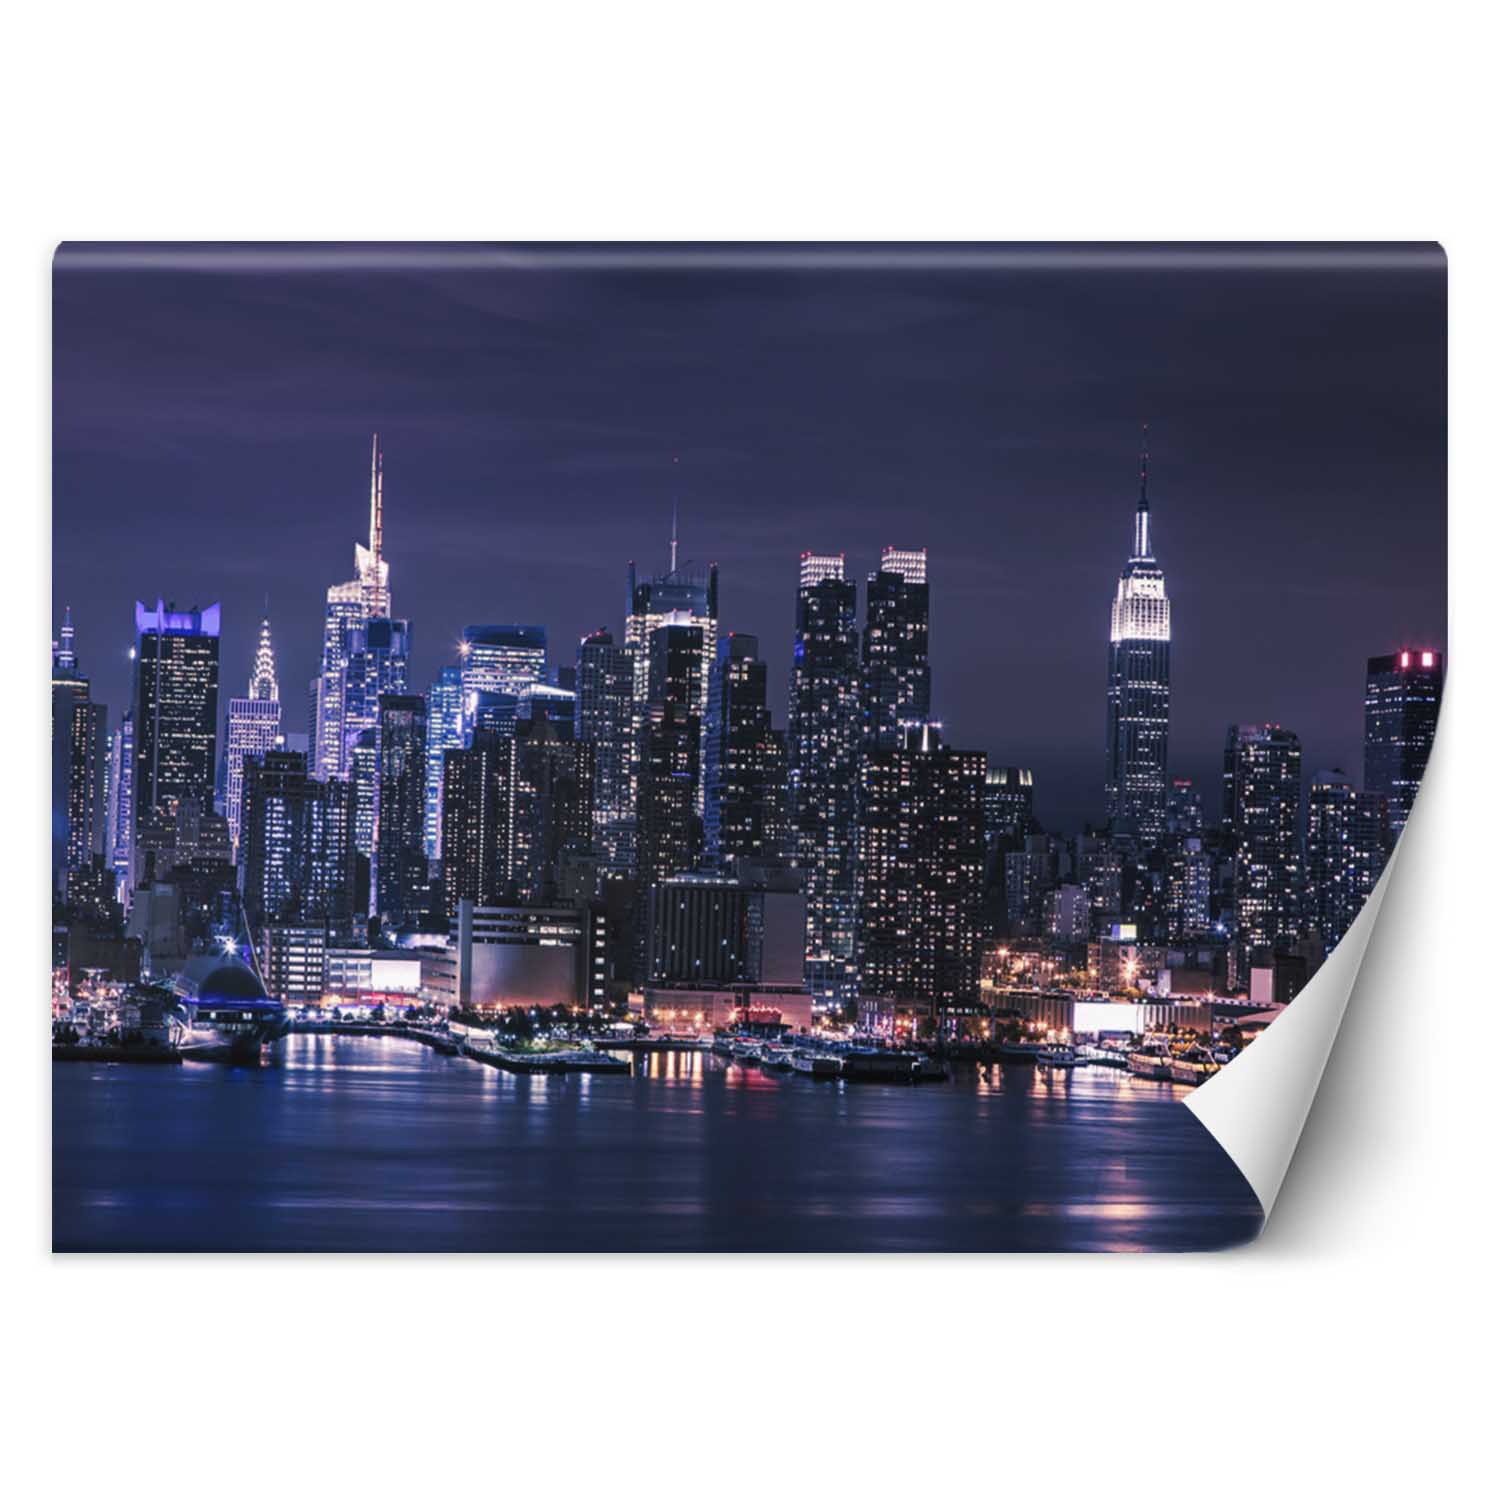 Trend24 – Behang – New York ‘S Nachts – Behangpapier – Fotobehang – Behang Woonkamer – 250x175x2 cm – Incl. behanglijm